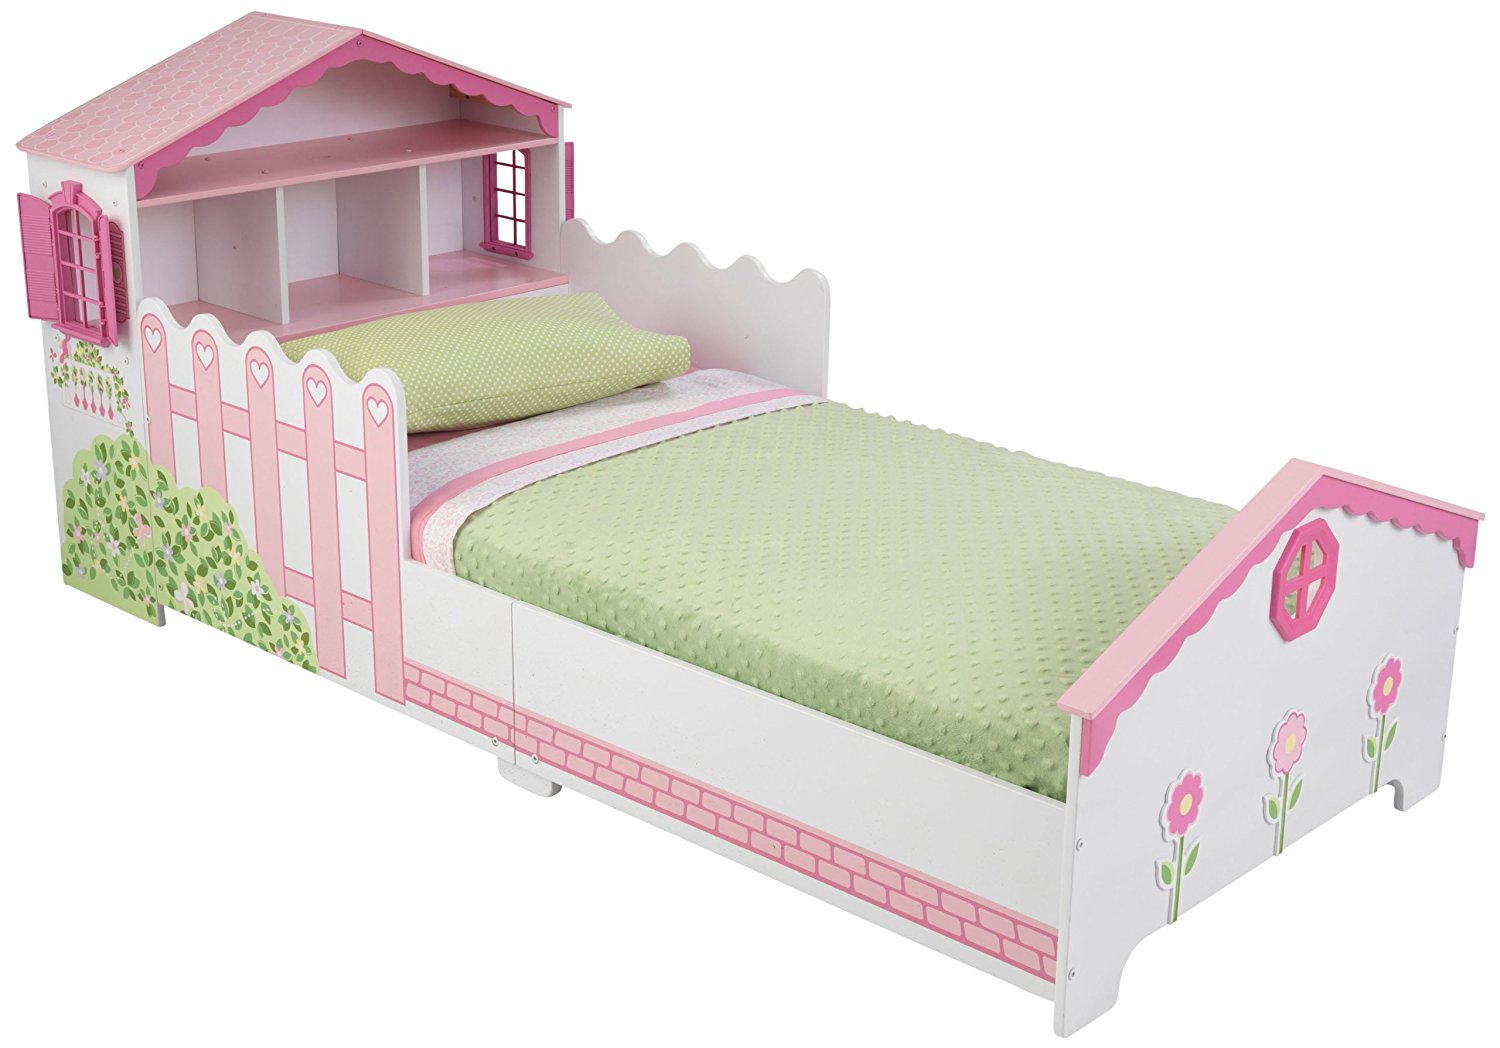 Детская кровать Кукольный домик, с полочками  